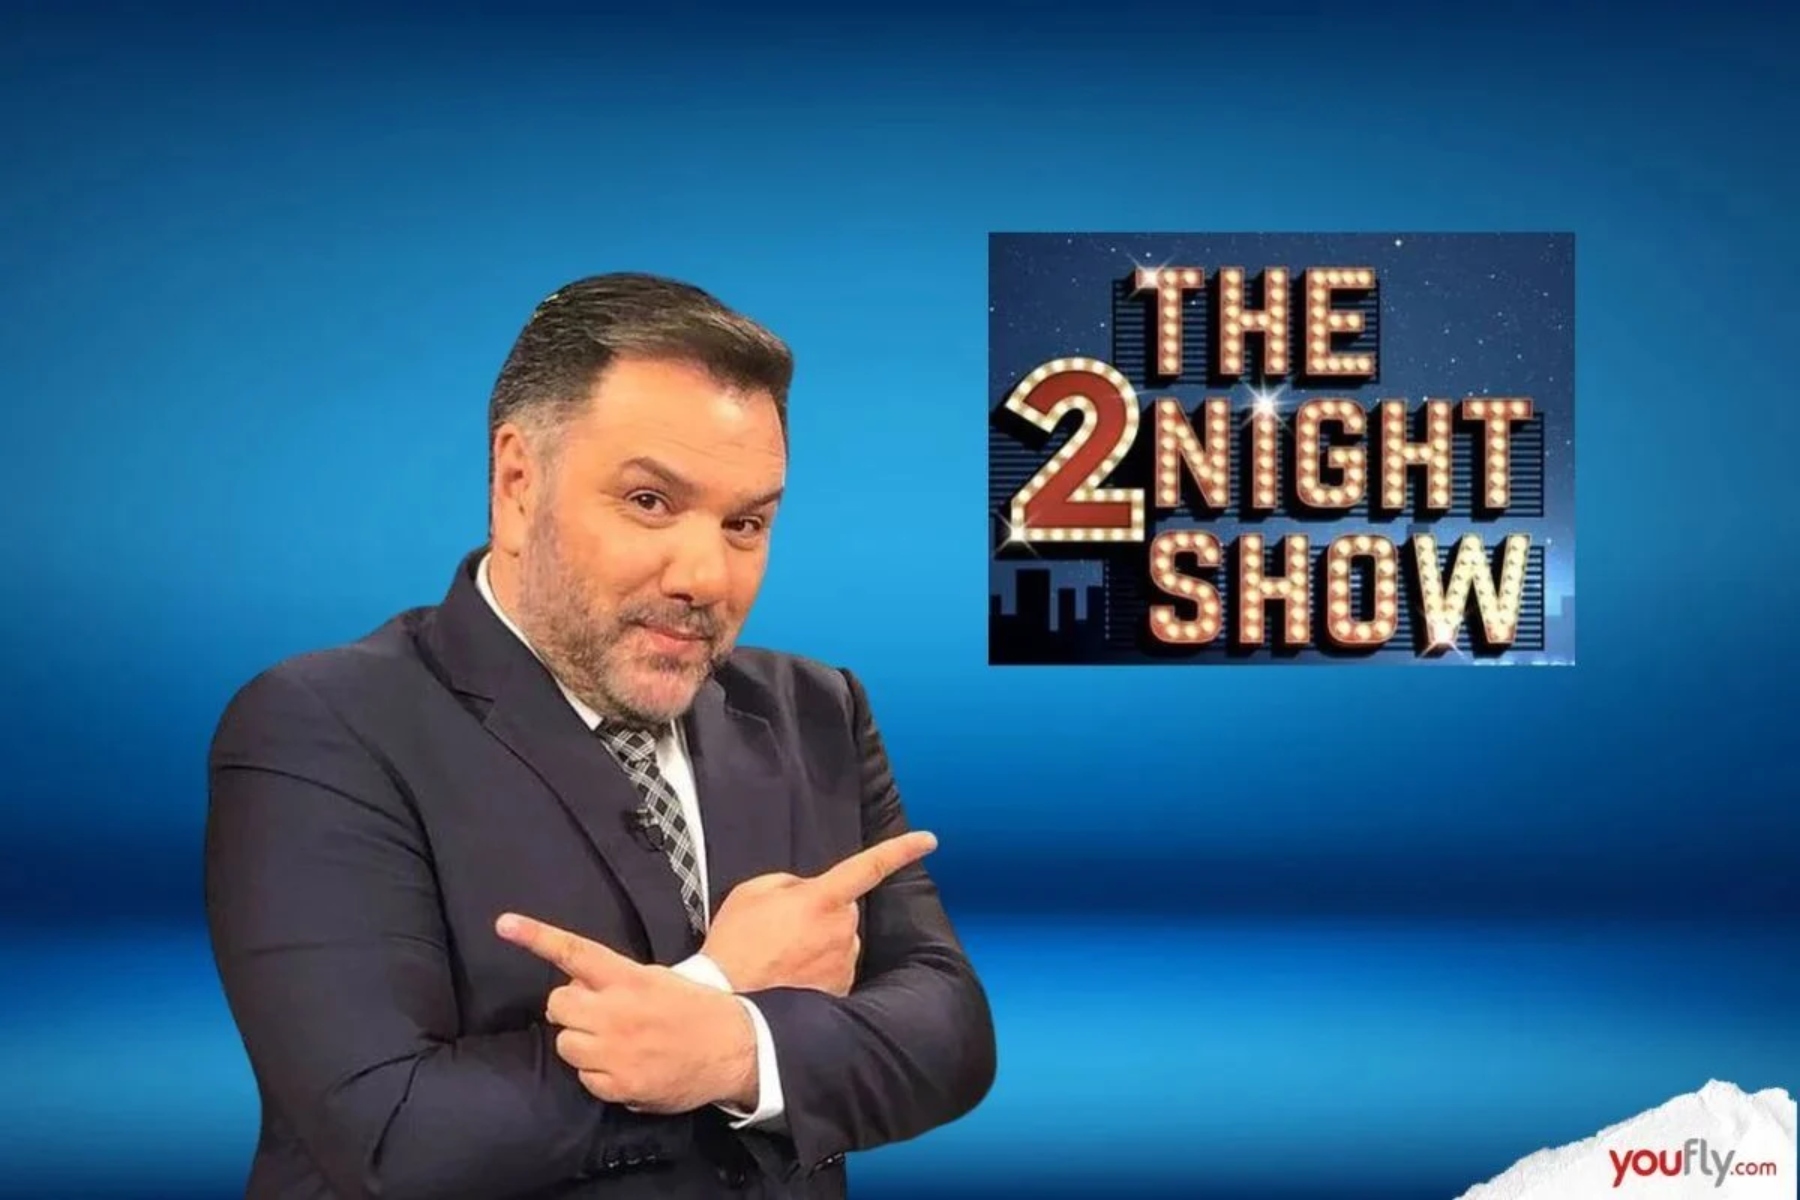 The 2night Show 16/5: Ποιοι θα είναι οι σημερινοί καλεσμένοι του Γρηγόρη Αρναούτογλου; [trailer]